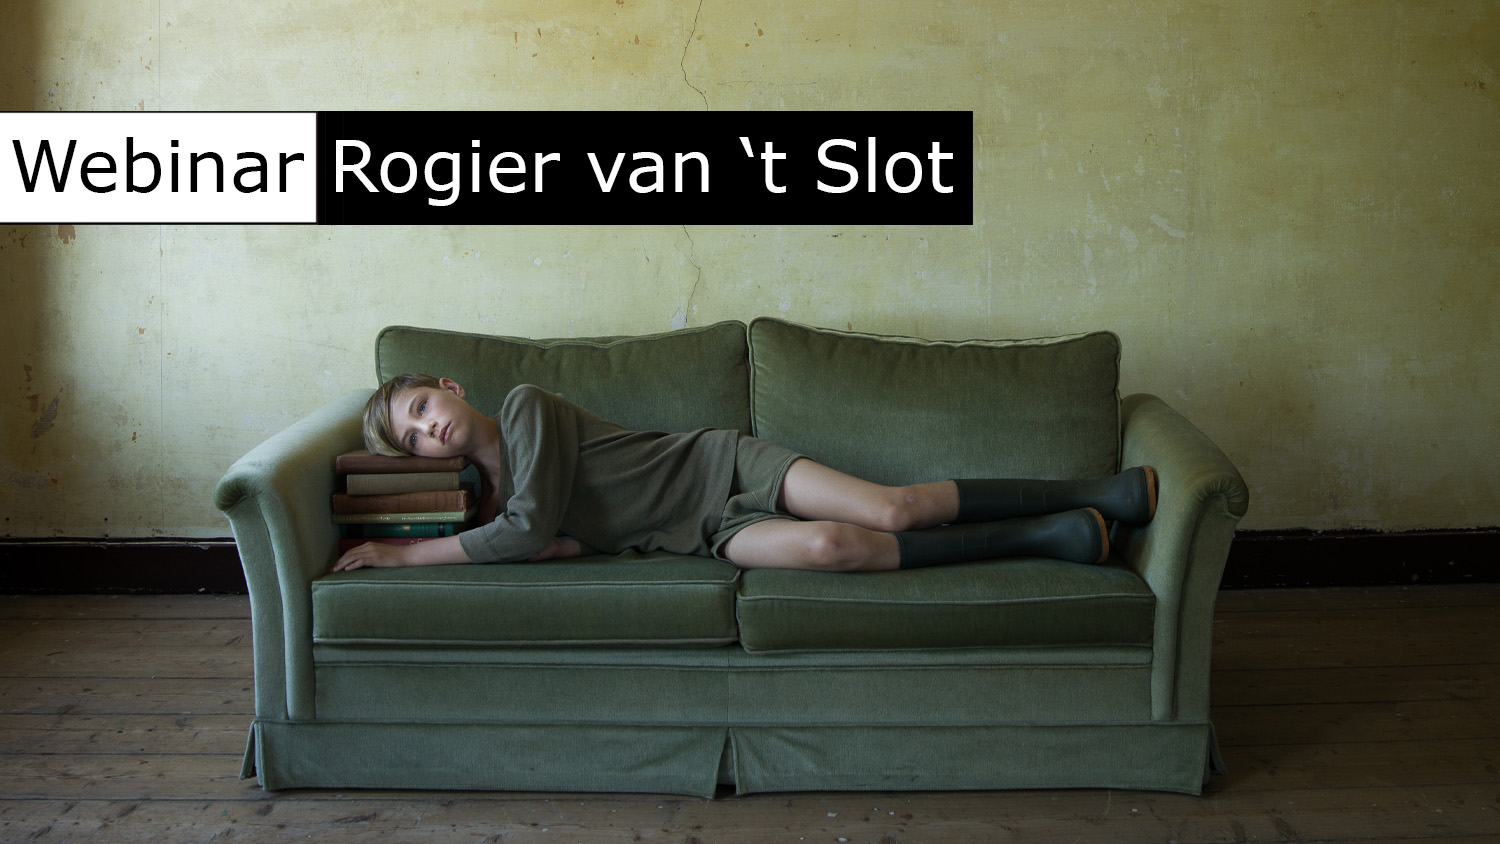 Rogier van 't Slot